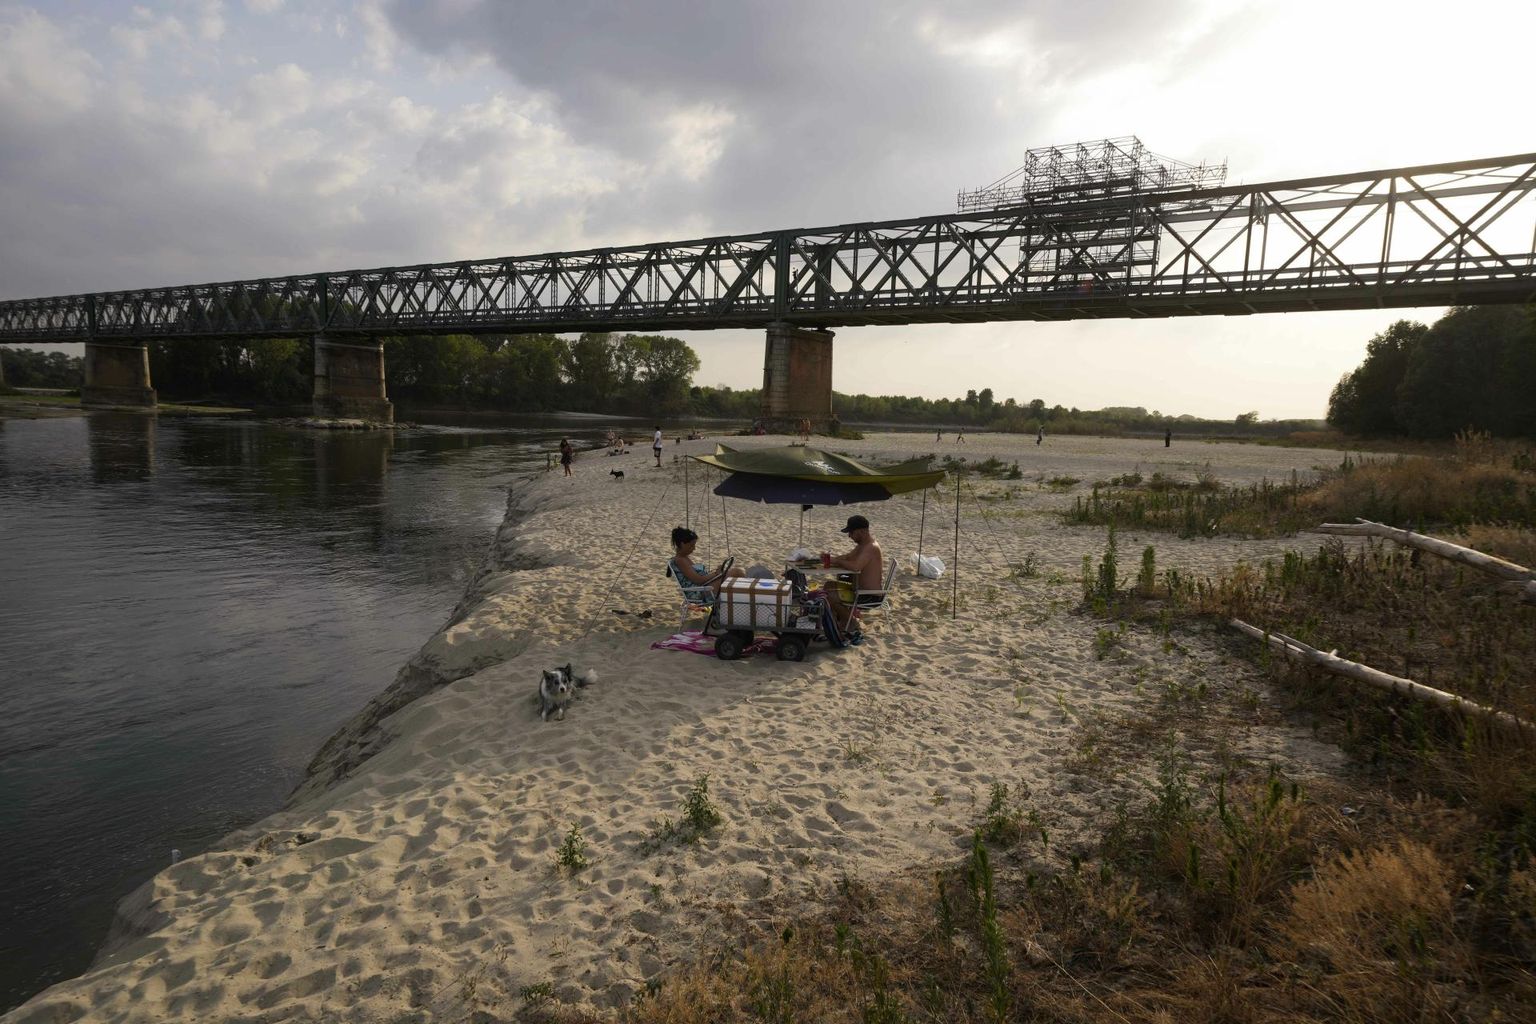 Inimesed naudivad päikesepaistet veest kuivaks jäänud Po jõe põhjal Pavia lähistel Linarolos.